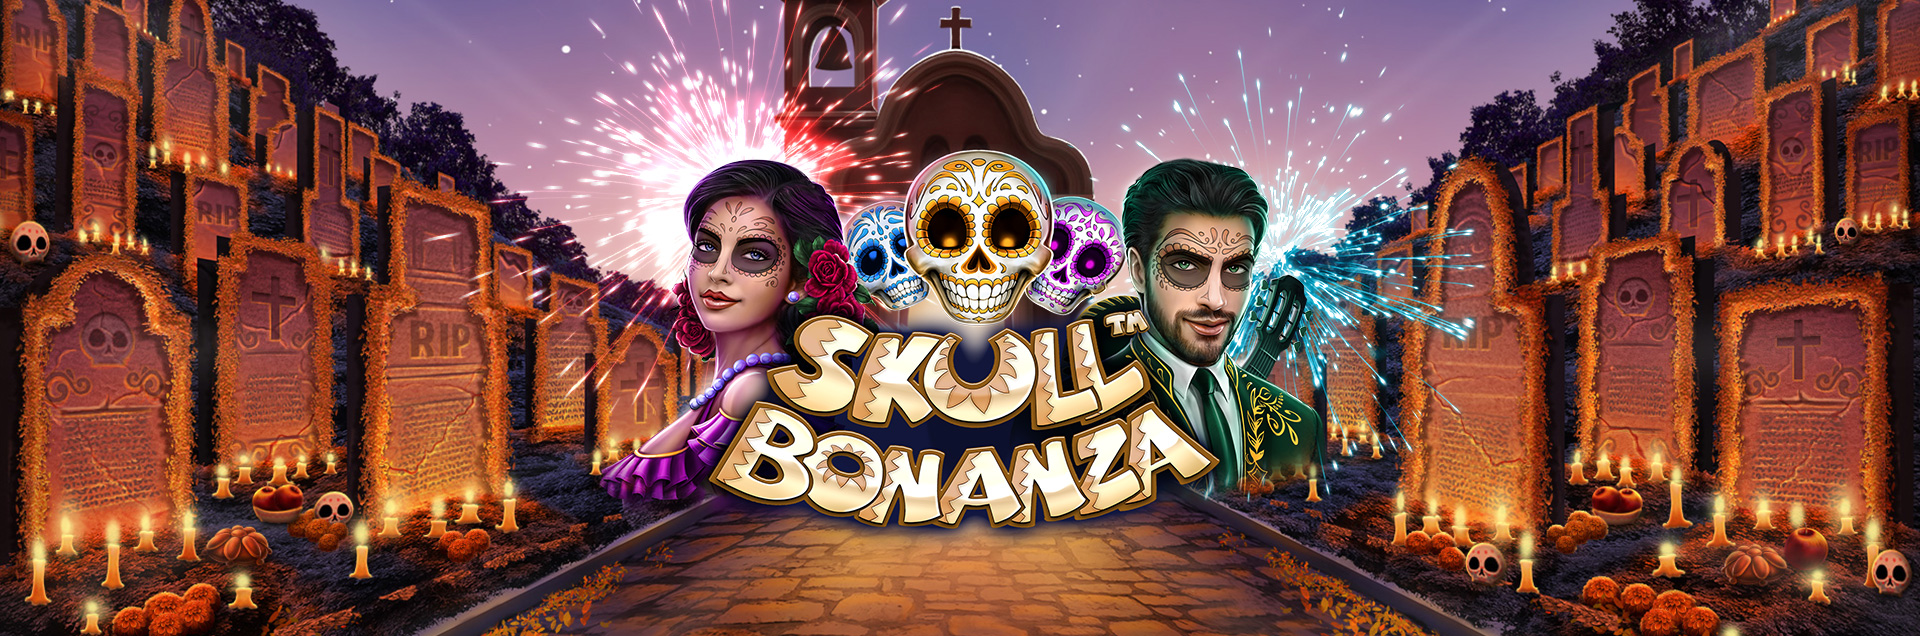 Skull Bonanza header games